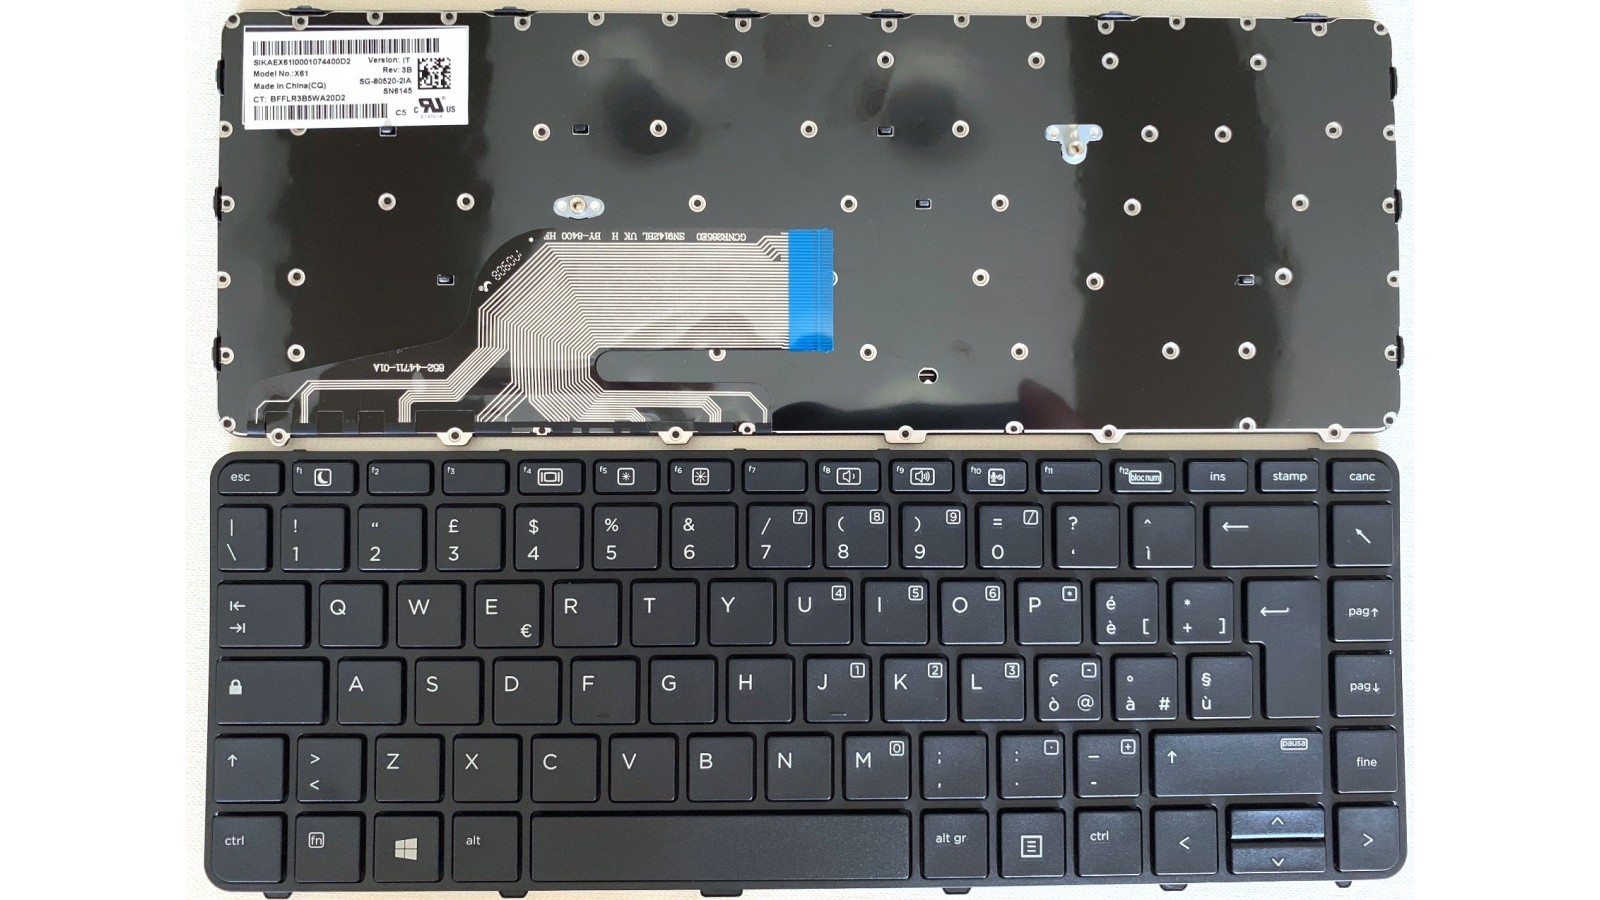 Tastiera italiana compatibile con HP ProBook 430 G3 G4, 440 G3 G4, 446 G3